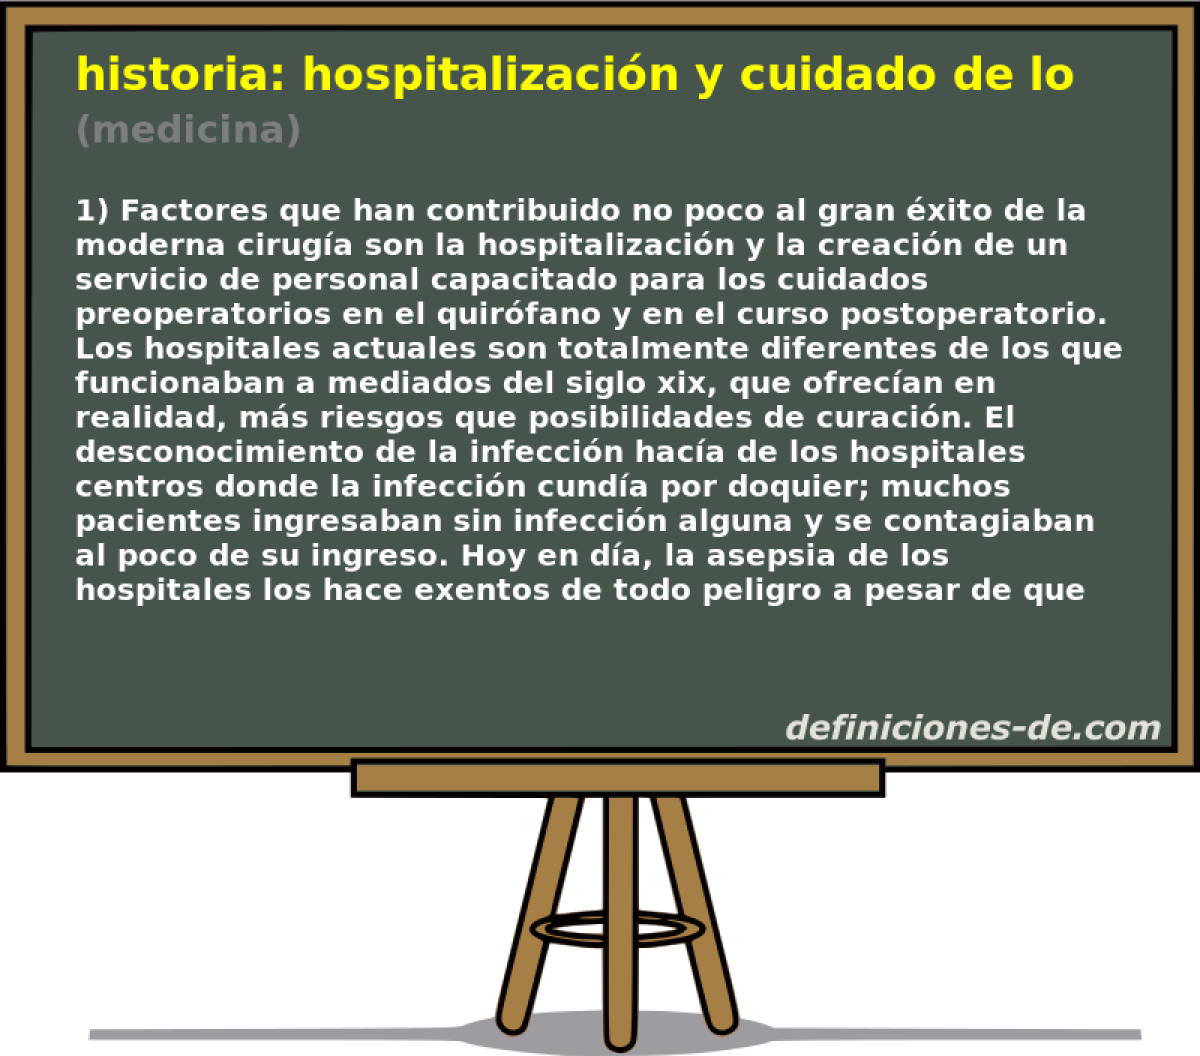 historia: hospitalizacin y cuidado de los enfermos (medicina)